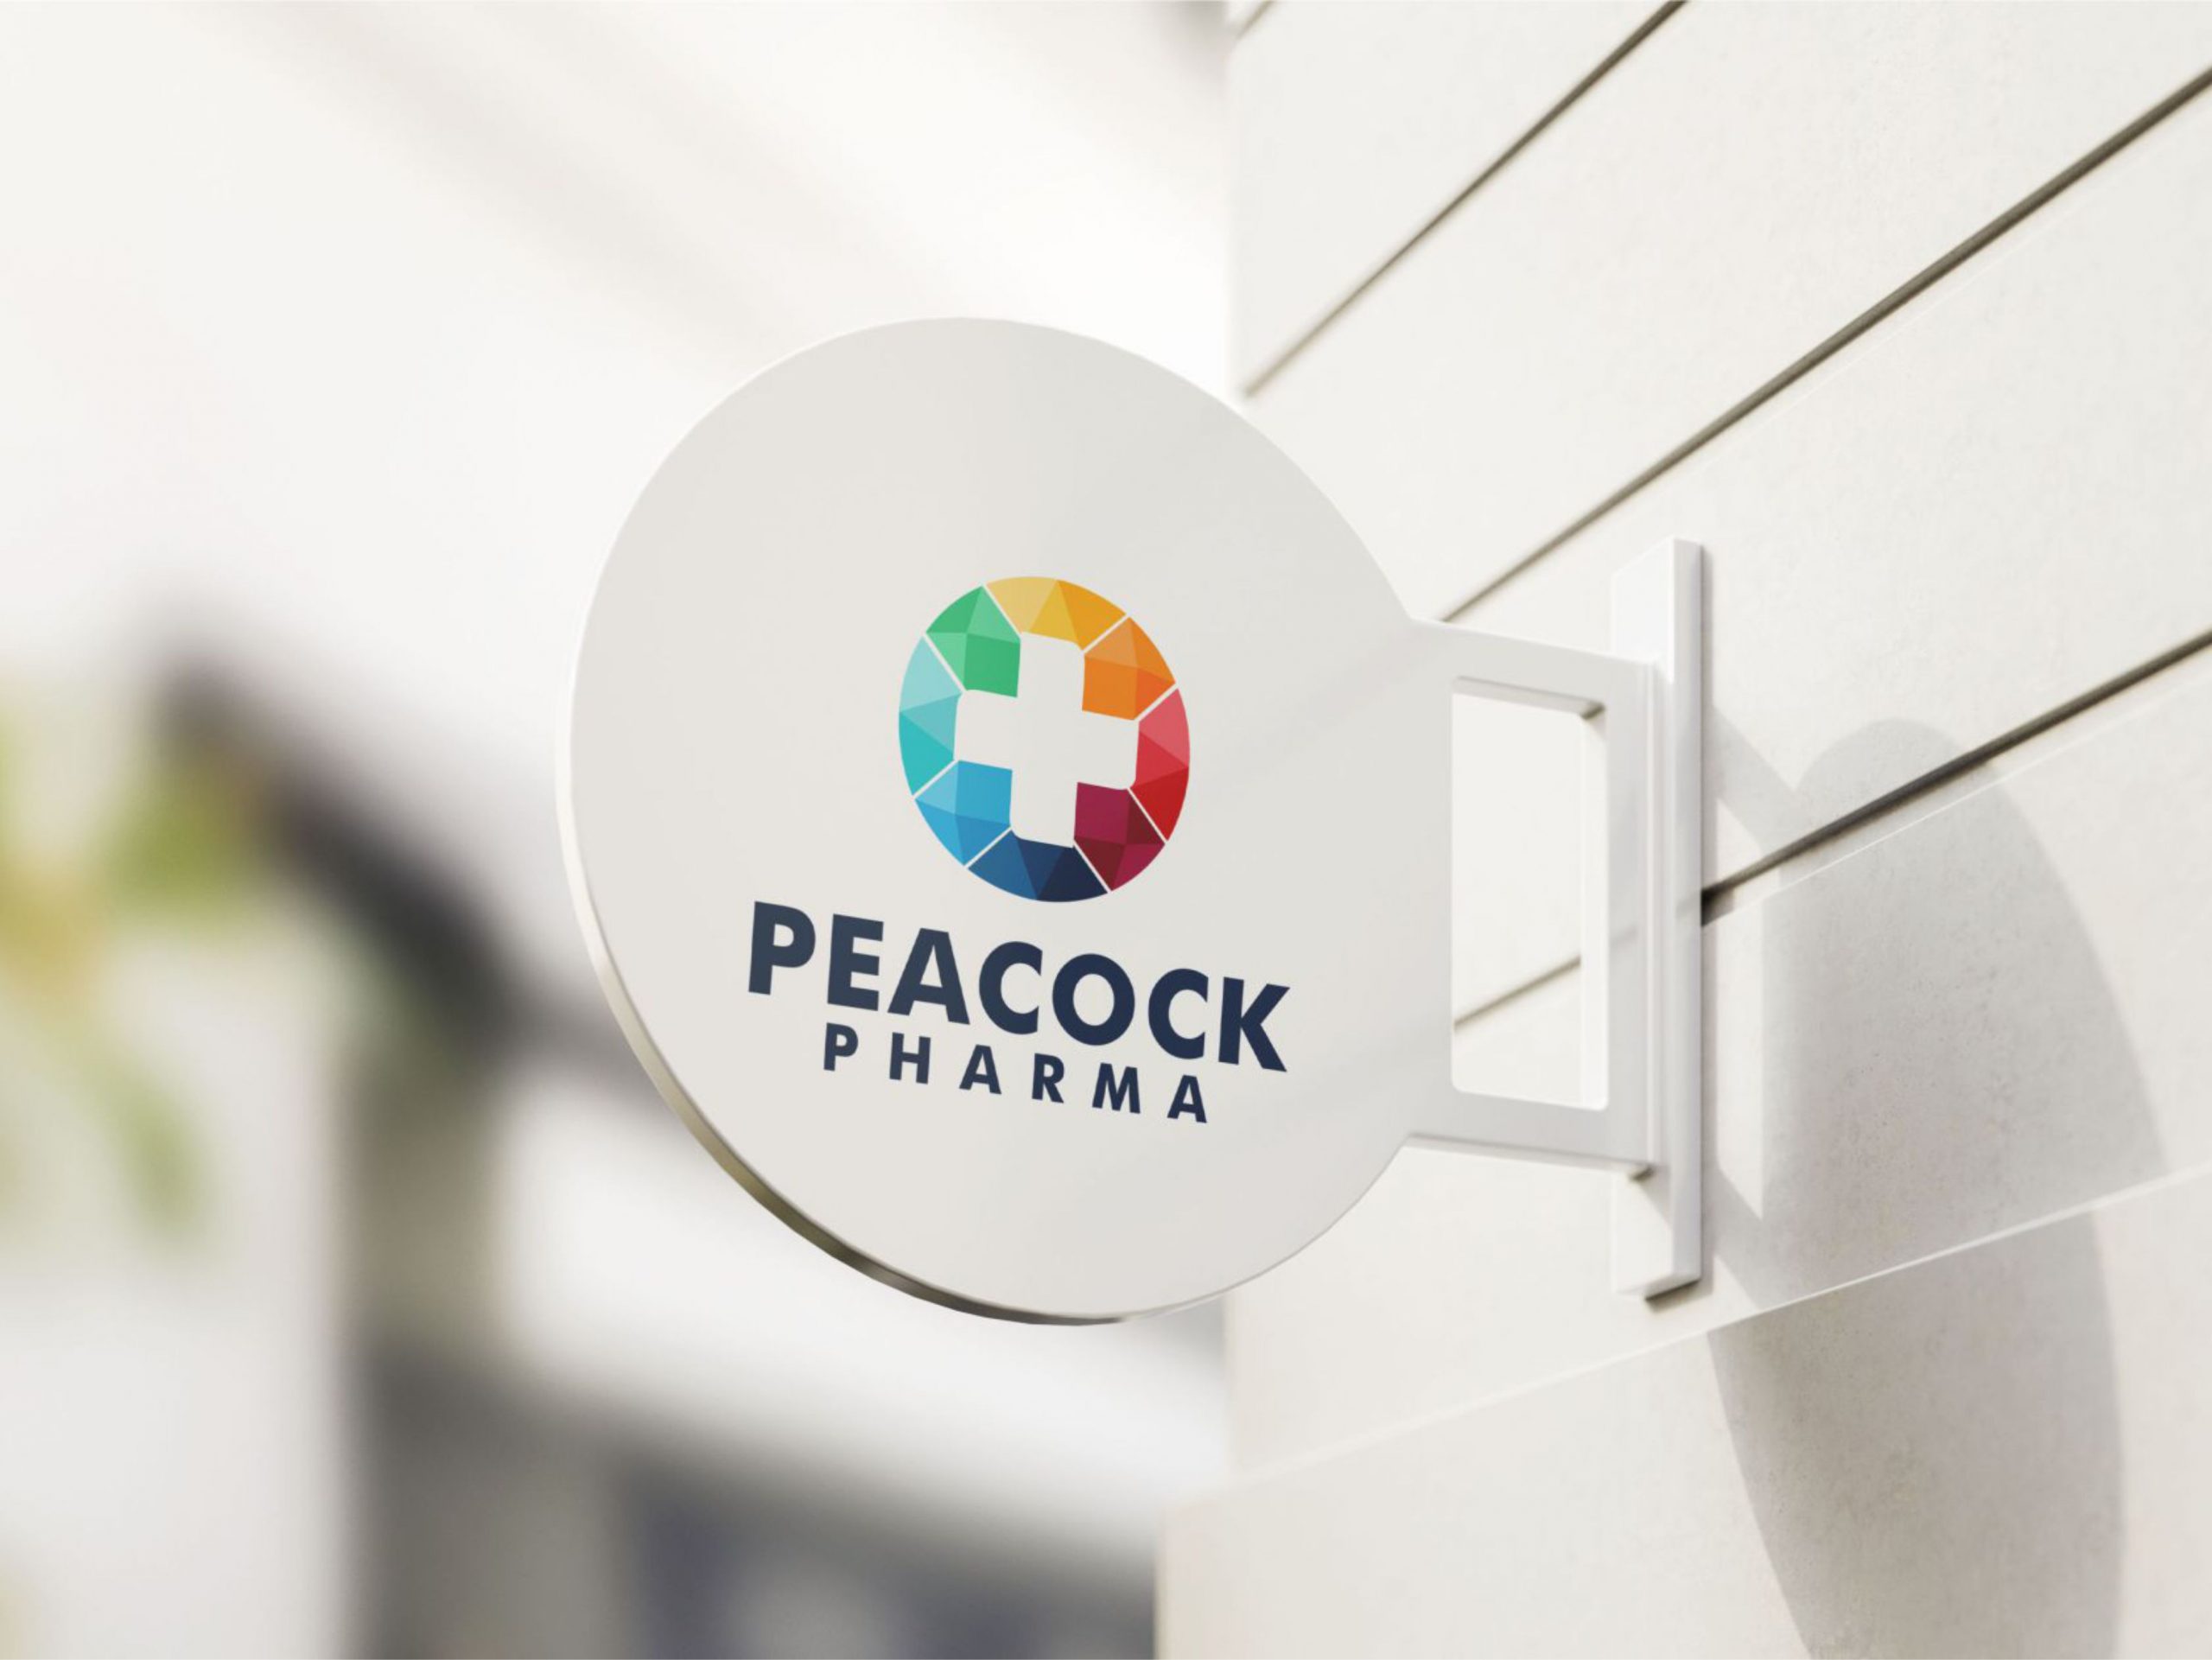 Peacock Pharma